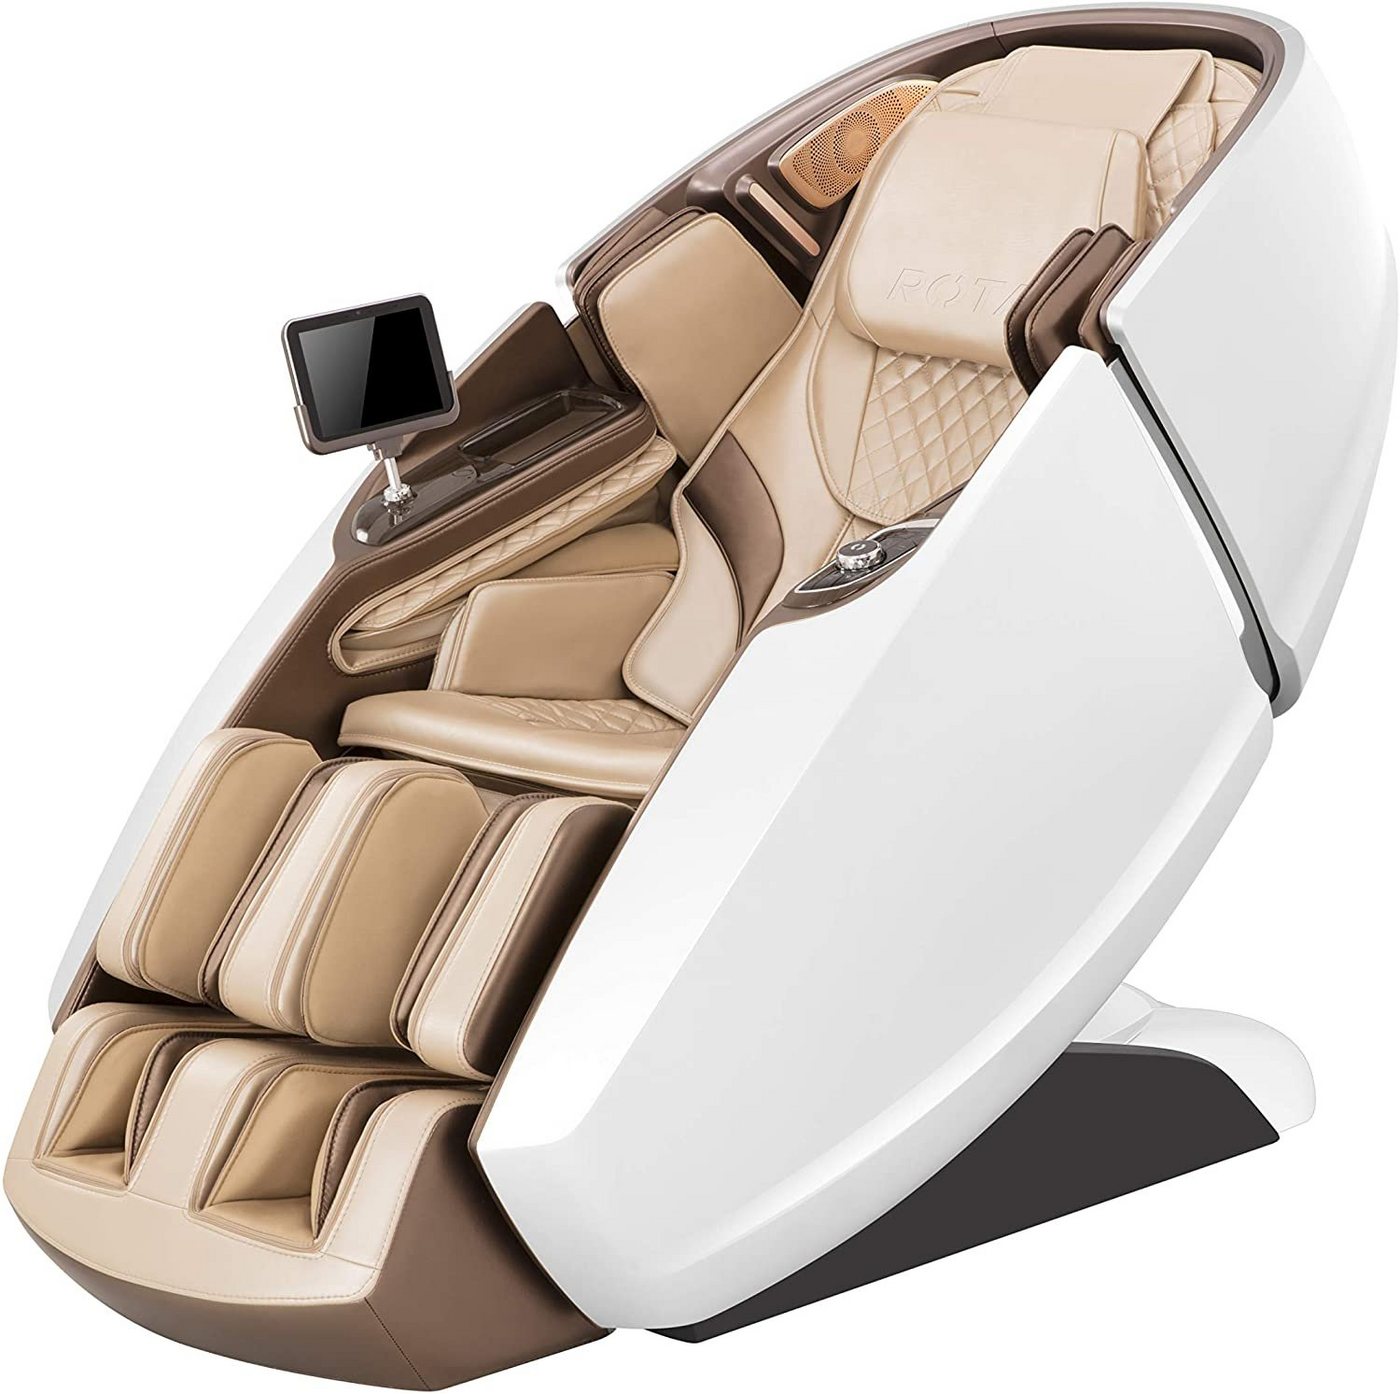 NAIPO Massagesessel, 3D High-End Massagestuhl mit Tablet, Raumkapsel-Design von NAIPO